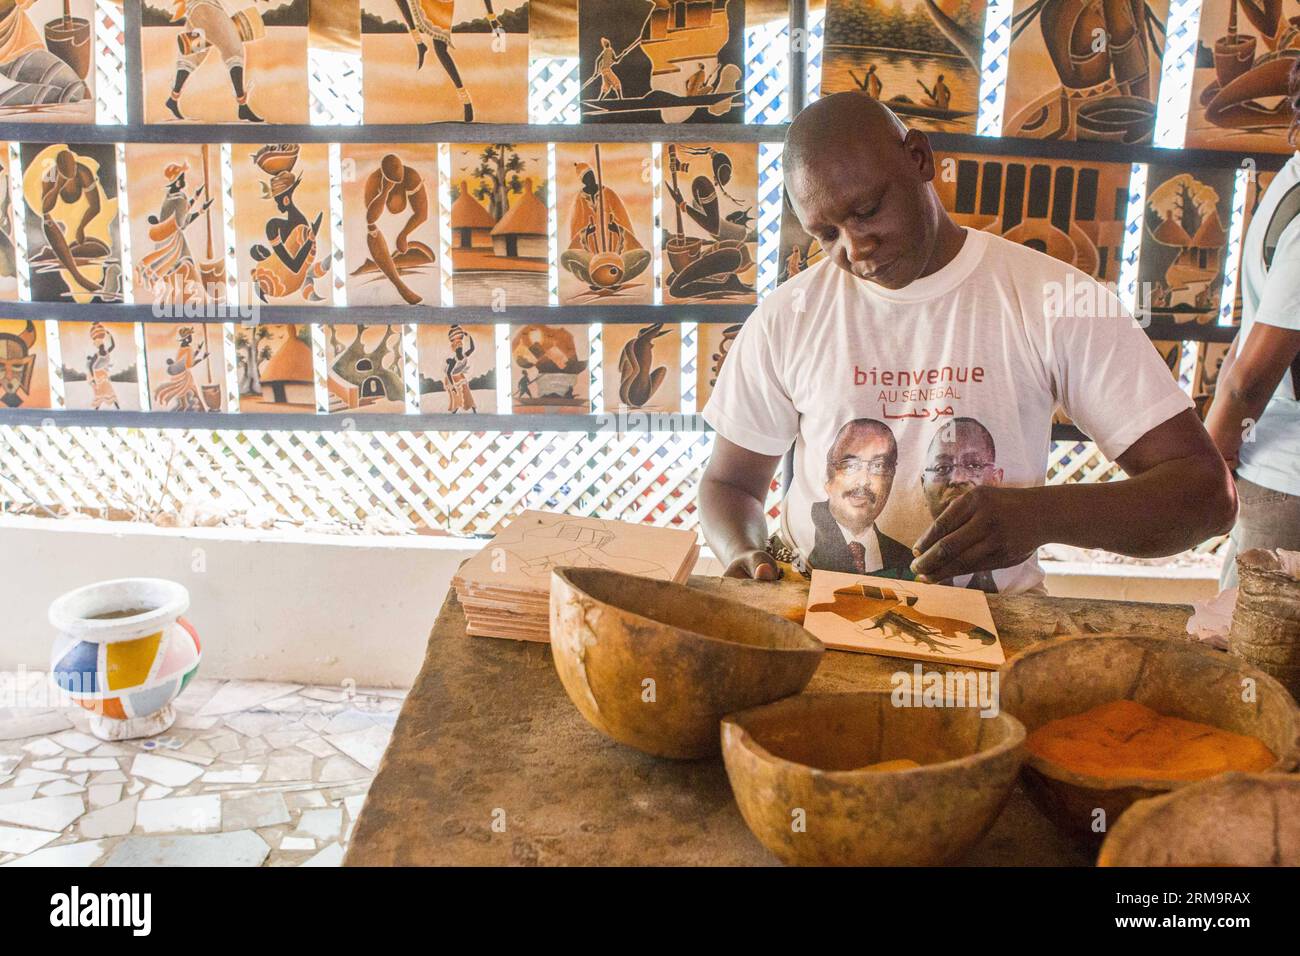 (140530) -- DAKAR, 30 mai 2014 (Xinhua) -- un artiste réalise des peintures sur sable à la galerie Dougoub de l'île de Gorée à Dakar, capitale du Sénégal, le 24 mai 2014. La 11e édition de la Biennale d’art contemporain africain, Dak Art, se tient au Sénégal du 9 mai au 8 juin. Dakar est situé sur la péninsule du Cap-Vert sur la côte atlantique. Sa position, à la limite occidentale de l’Afrique, est un avantage pour l’intégration de l’art contemporain africain dans le marché international de l’art. (Xinhua/Li Jing) SENEGAL-DAKAR-CULTURE-ART PUBLICATIONxNOTxINxCHN Dakar Mai 30 2014 XINHUA to Artist Makes Sand Pai Banque D'Images